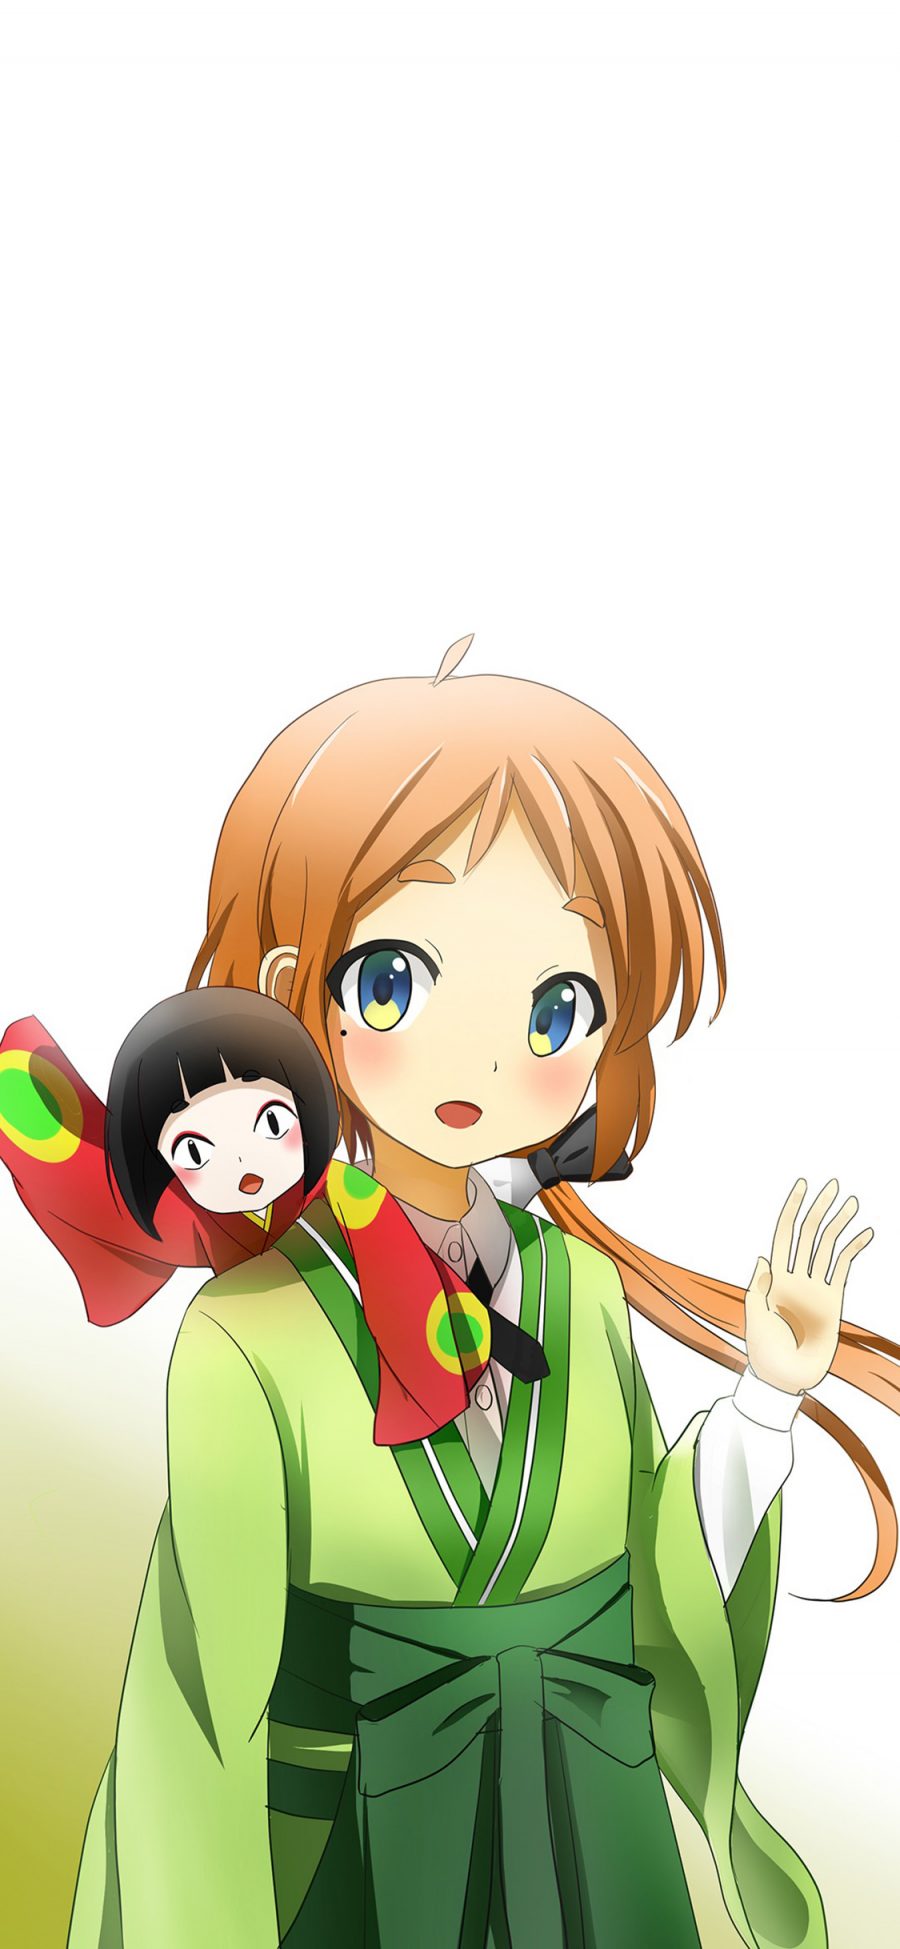 [2436×1125]少女 日本 漫画 短发 和服 二次元 萝莉 苹果手机动漫壁纸图片